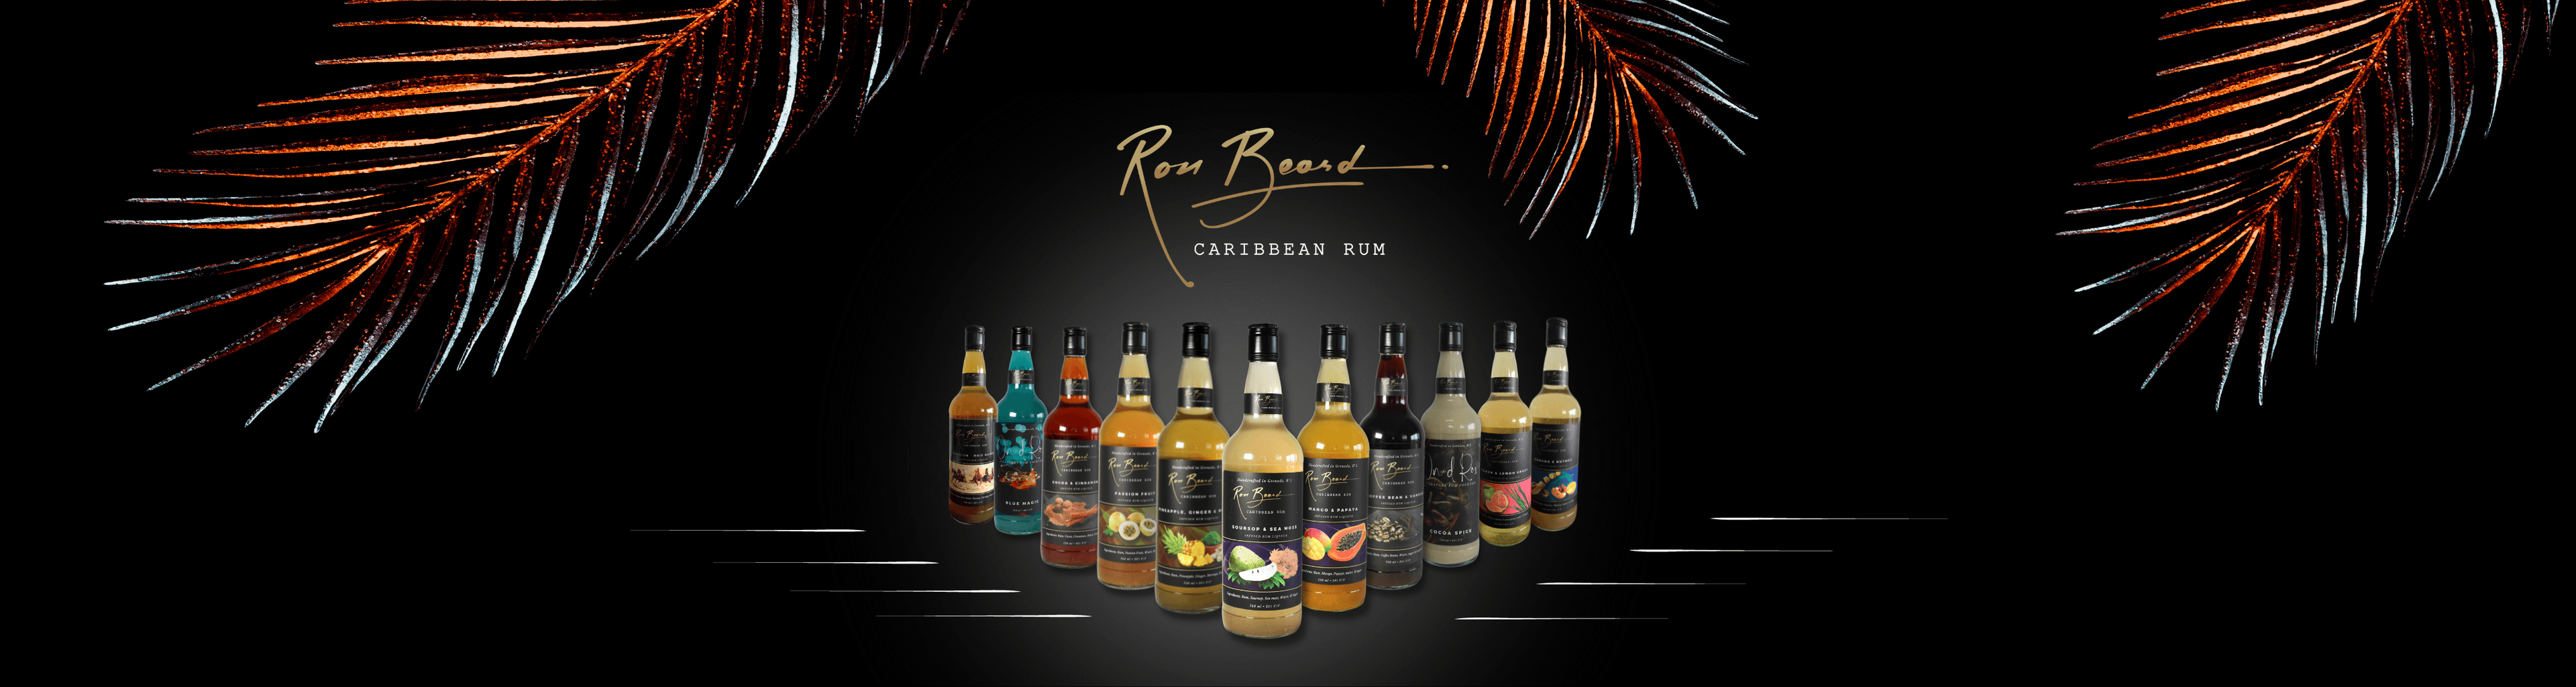 Ron Beard Caribbean Rum Inc